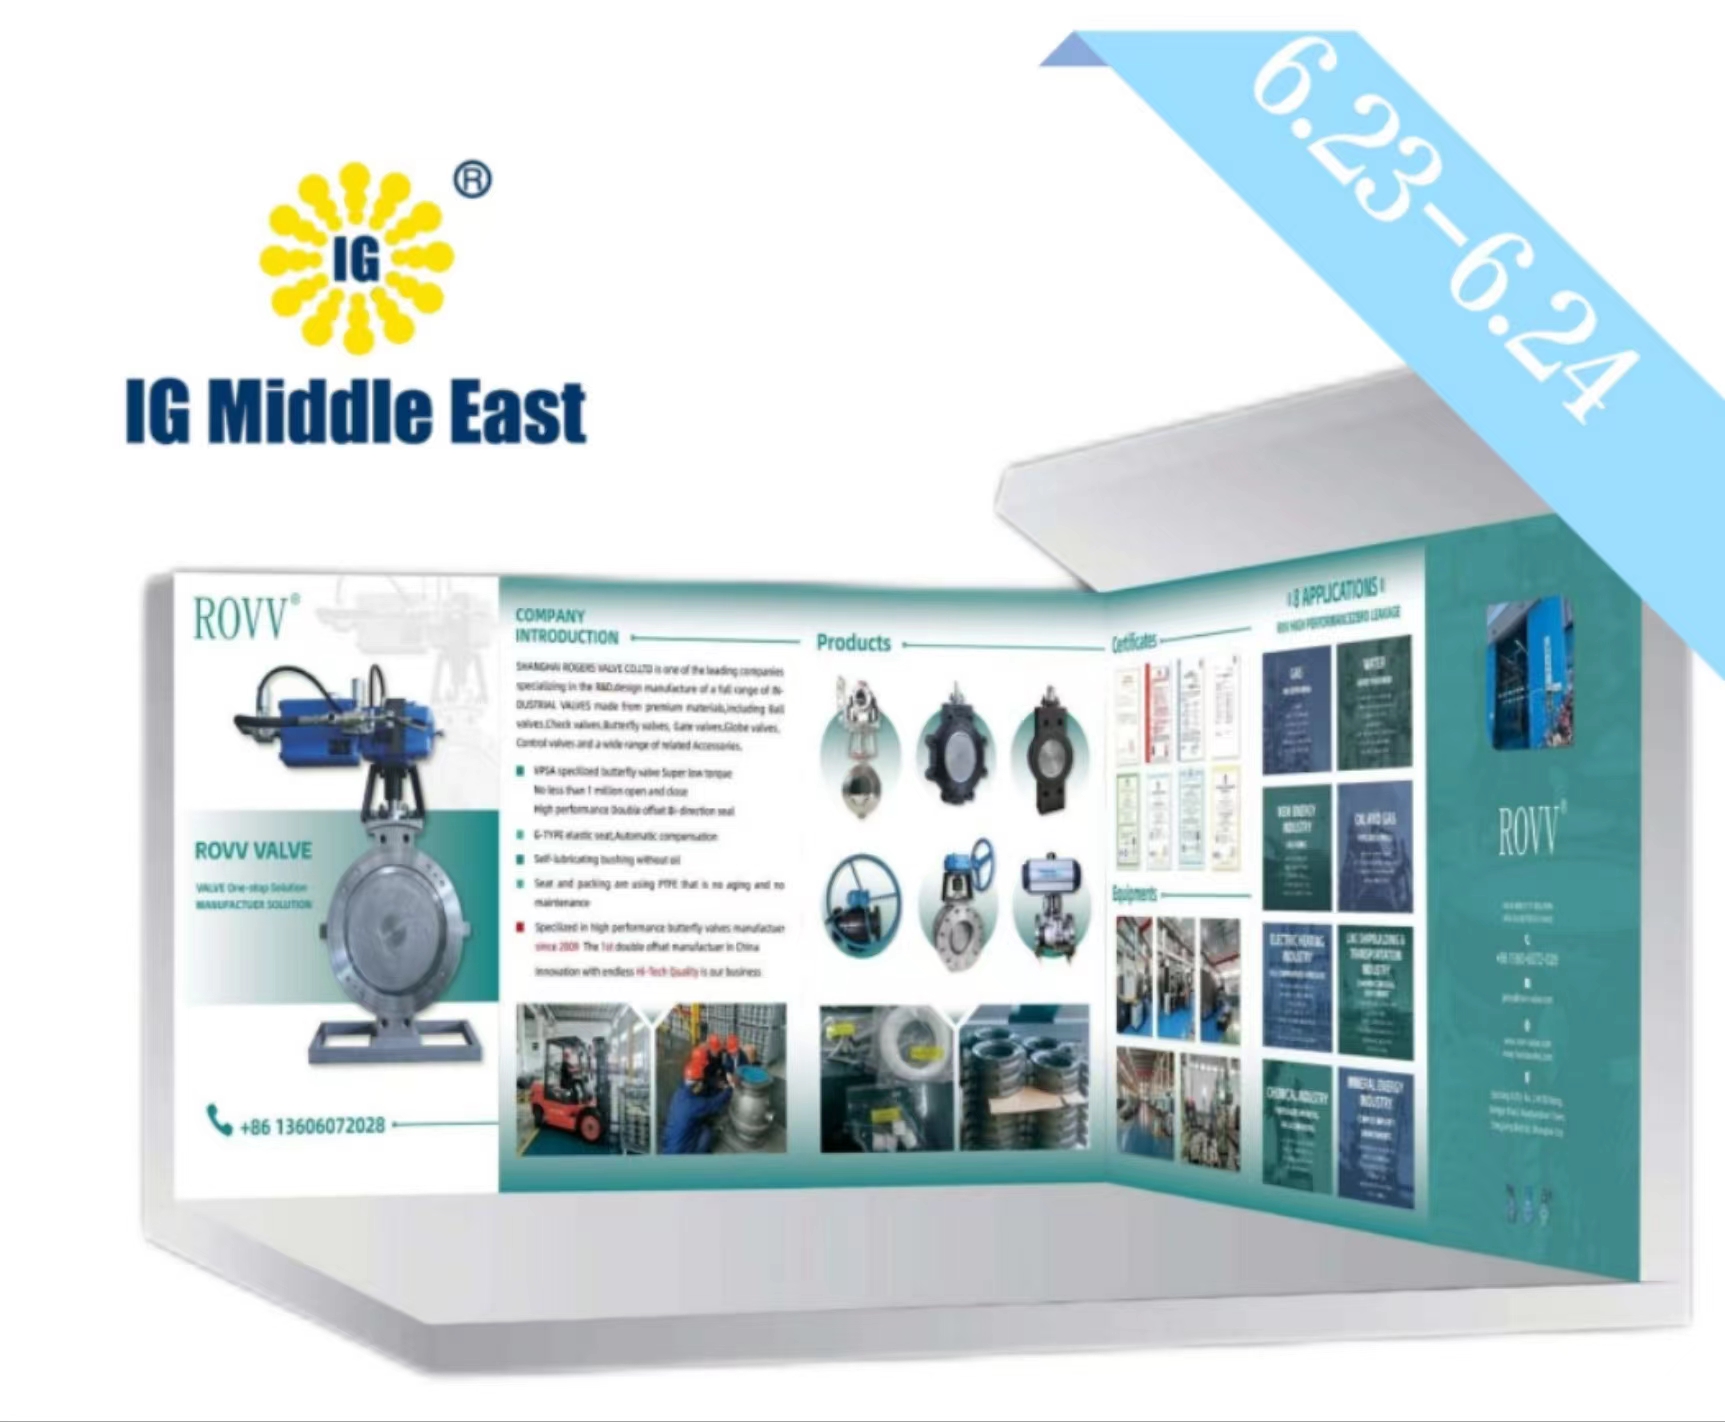 6月迪拜 | 罗杰斯与您相约中东国际气体技术设备展览会